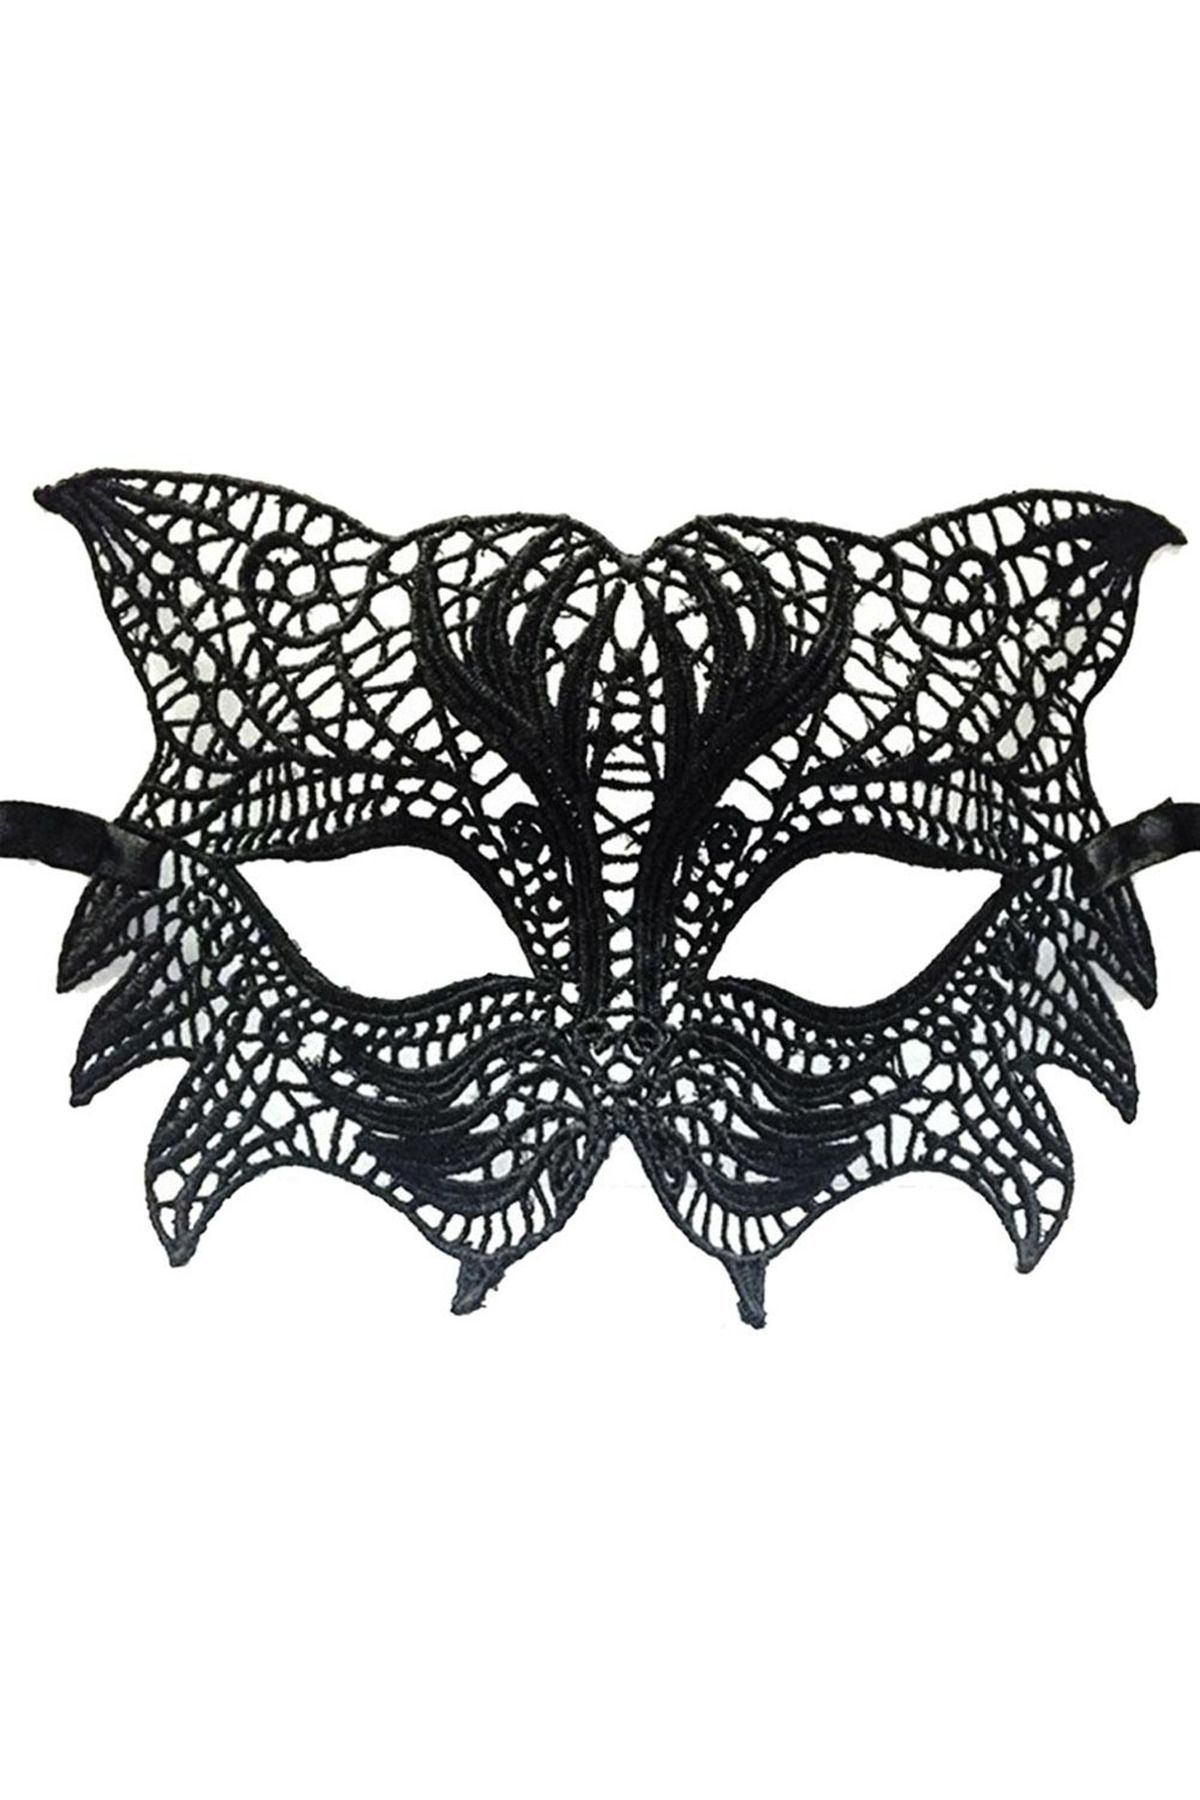 Skygo Siyah Renk Kedi Model Dantel İşleme Parti Maskesi